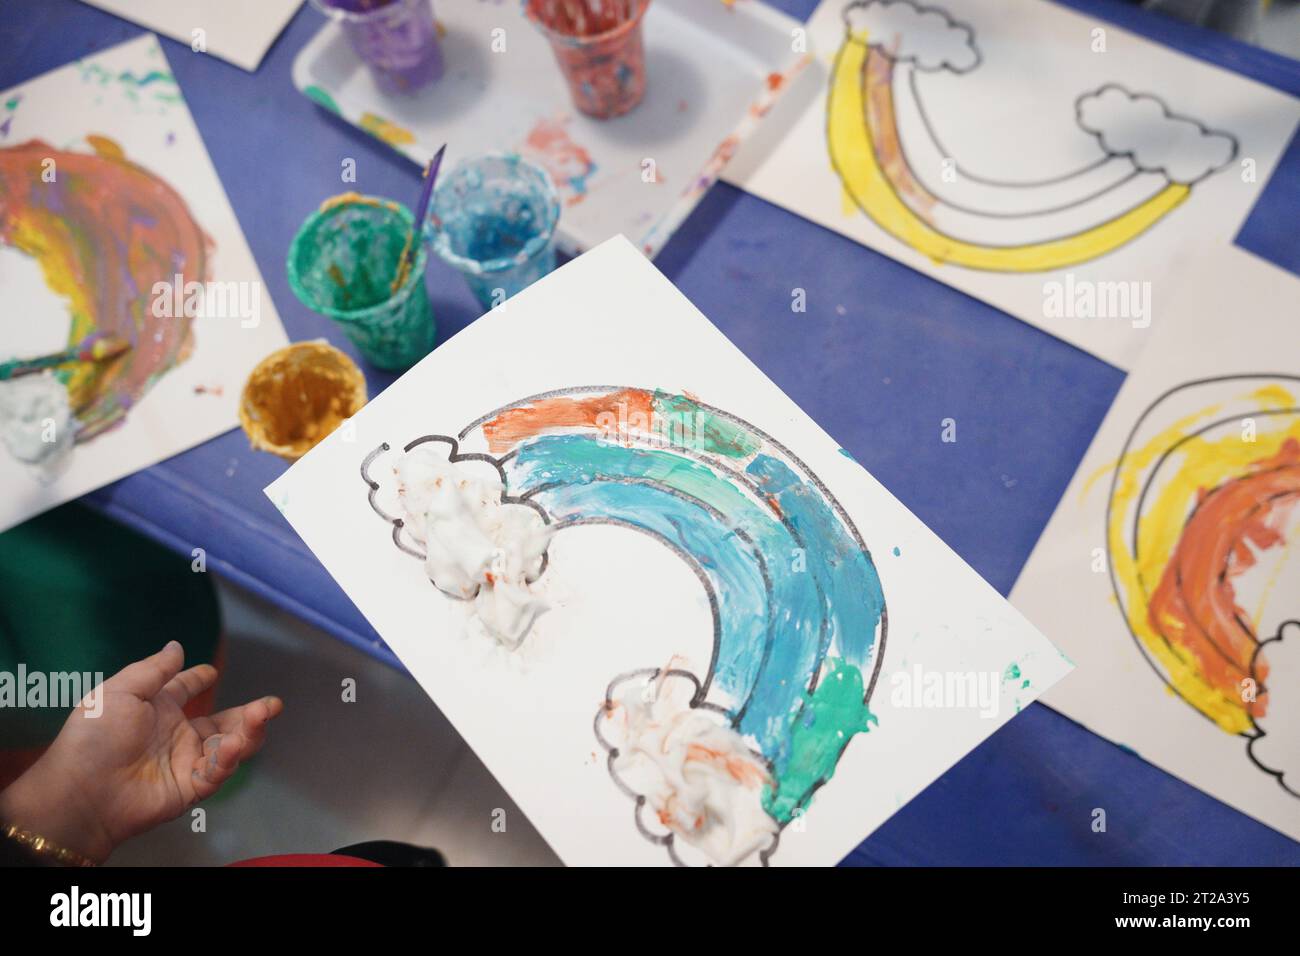 Kinder malen einen Regenbogen mit Pufffarben. Kinder färben sich im Klassenzimmer mit Pufffarben. Stockfoto